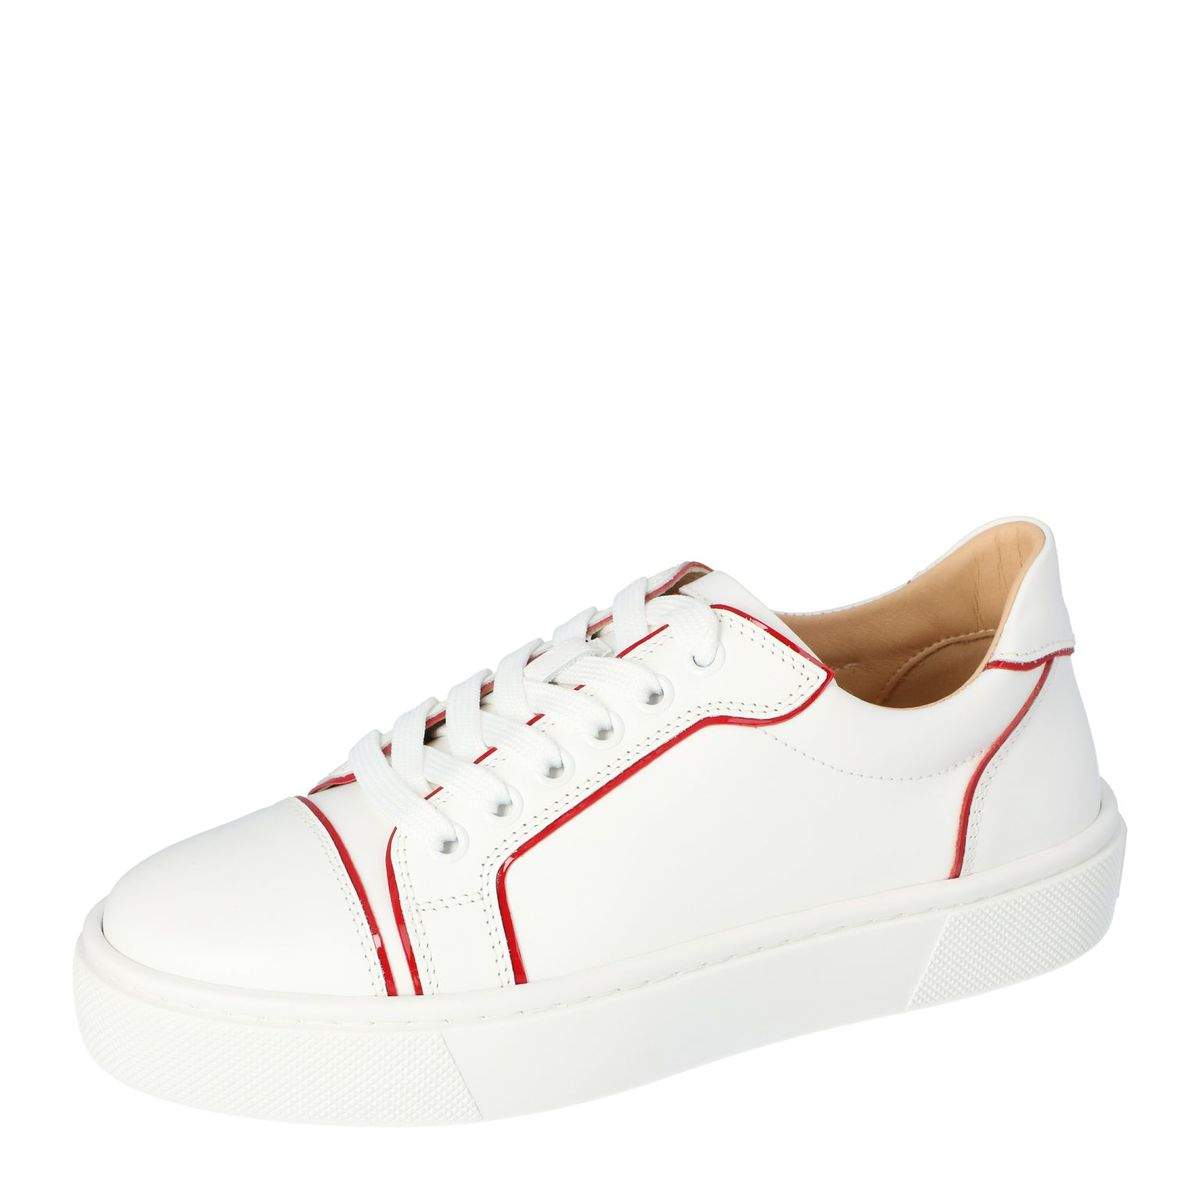 Christian Louboutin White Leather Vieirissima Sneakers Size 41